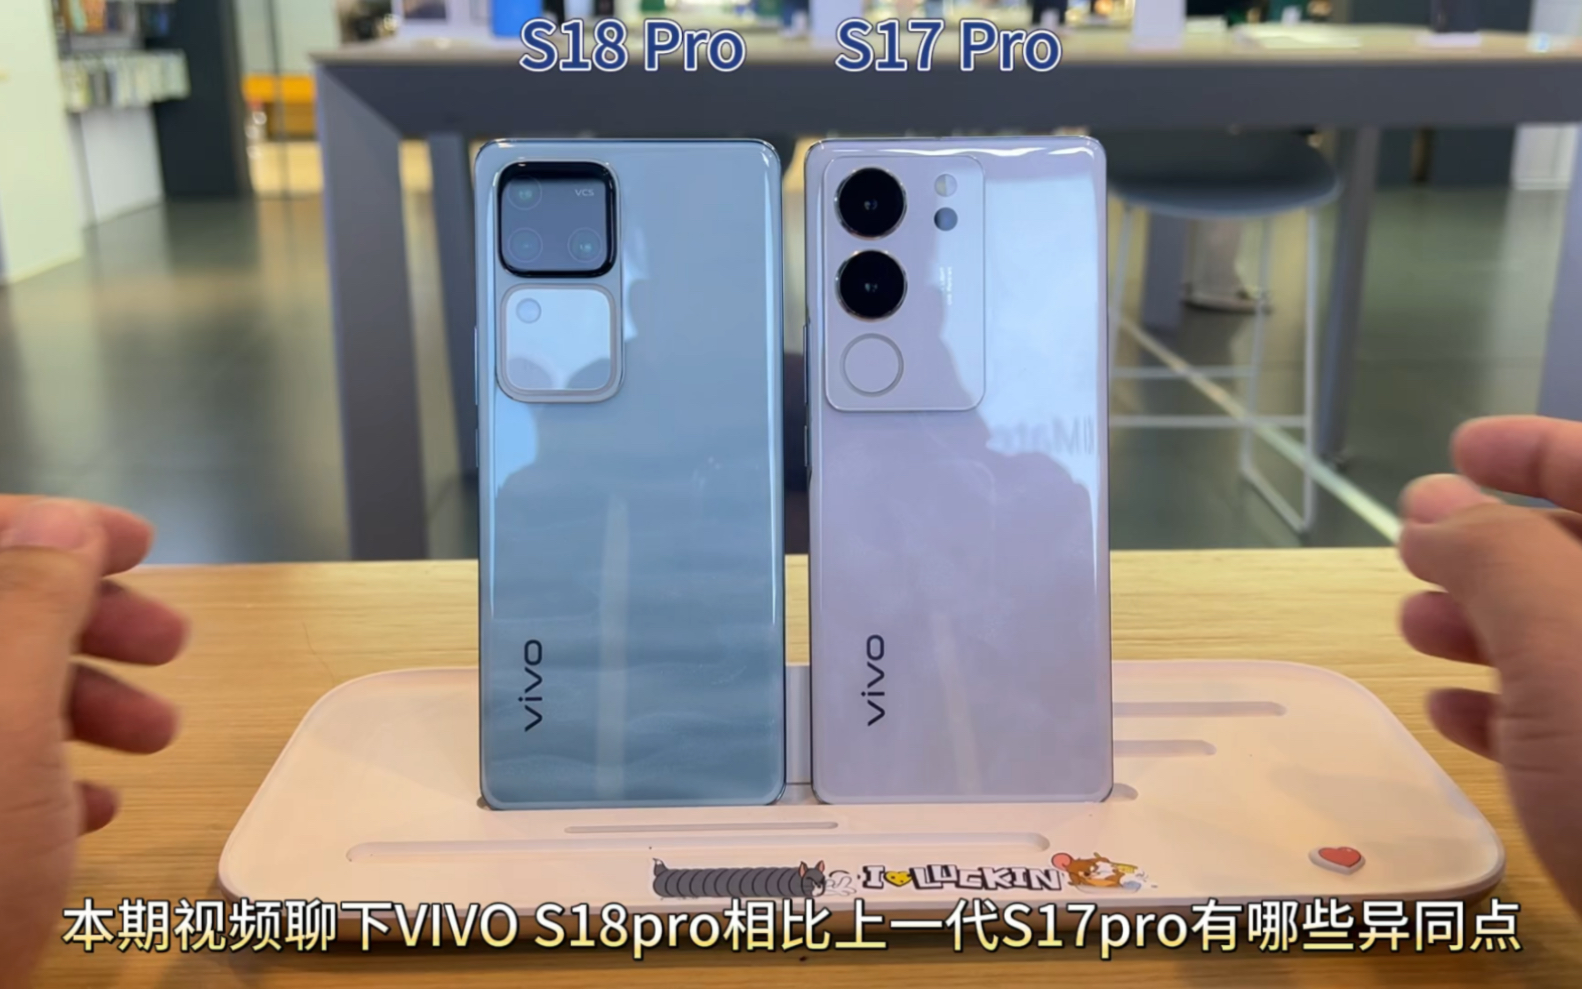 VIVO新款S18pro相比上一代S17pro有哪些异同点？外观规格、性能、影像？